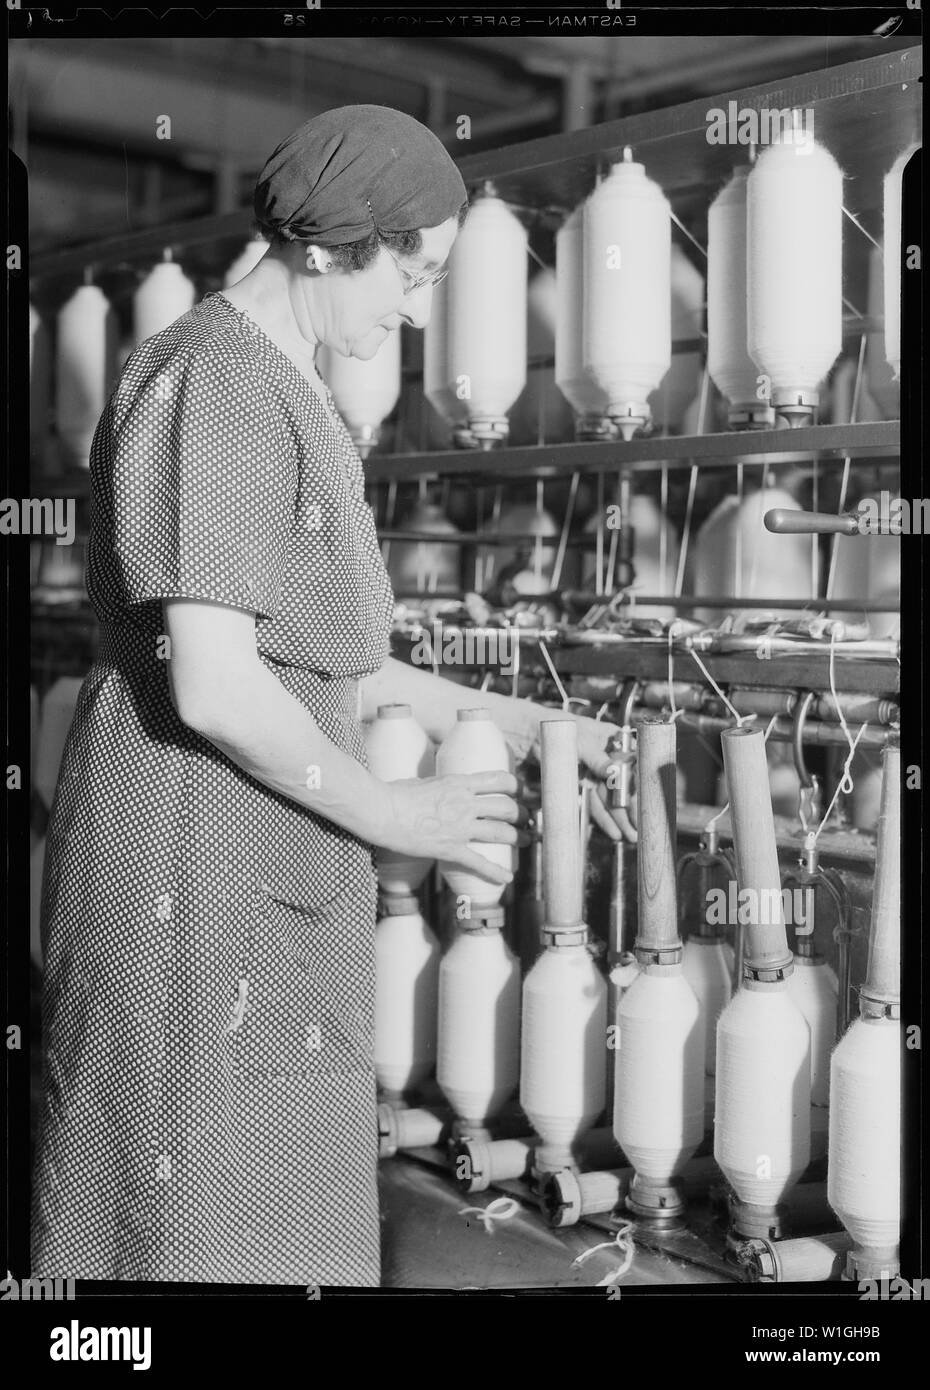 Manchester, New Hampshire - Textiles. Pacific Mills. Roving, a drawing-out process. (Front of machine).  Nederlands: Afzetten (afnemen van de spoelen) van een voorspinmachine. Stock Photo